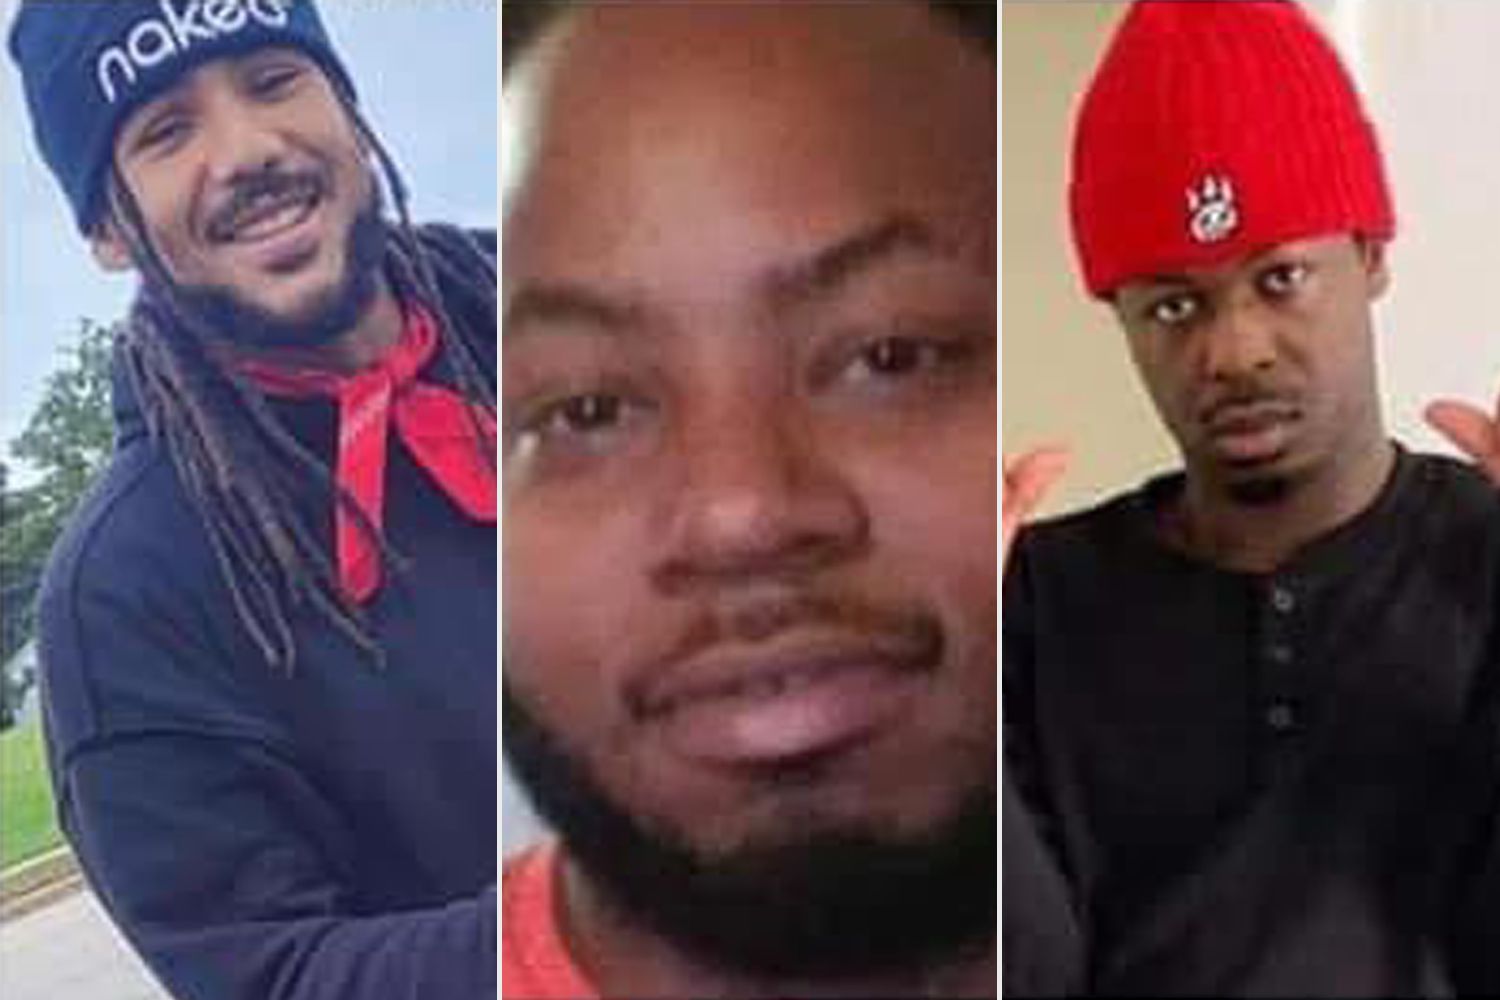 Corpos que se acredita pertencerem a rappers desaparecidos desde show cancelado são encontrados: 'Eles não mereciam isso'